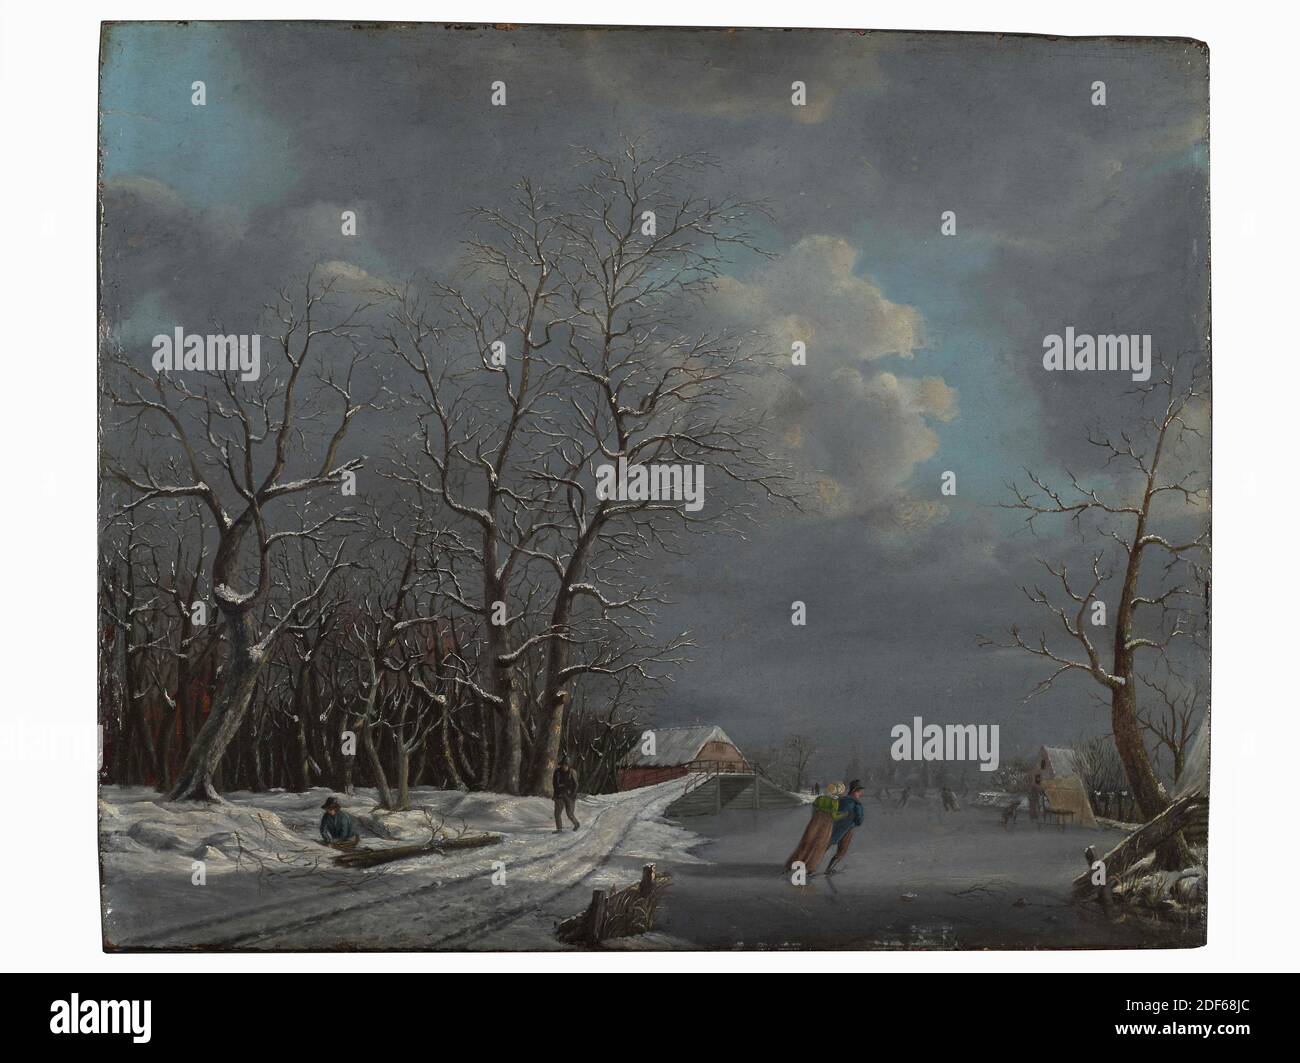 pintura, Jan Gerardus Cassteelen, 1822, frente de firma, abajo a la derecha, en la valla: J.G.C. 1822, panel, pintura al óleo, pintado, portador: 32.3 × 38.9 × 1cm (323 × 389 × 10mm), con marco: 46.1 x 51 x 5,5cm (461 x 510 x 55mm), patinaje sobre hielo, paisaje invernal, mujer, canal, paisaje urbano, vista al hielo, hombre, árbol, granja, pintura que representa un paisaje invernal con gente patinadora. A lo largo de un canal congelado, en el que un caballero y una dama patinan, un camino cubierto de nieve conduce a la izquierda en dirección a una ciudad por delante. En la carretera se puede ver a un hombre caminando y un colector de madera de lado bajo árboles pesados. Un puente cruza Foto de stock